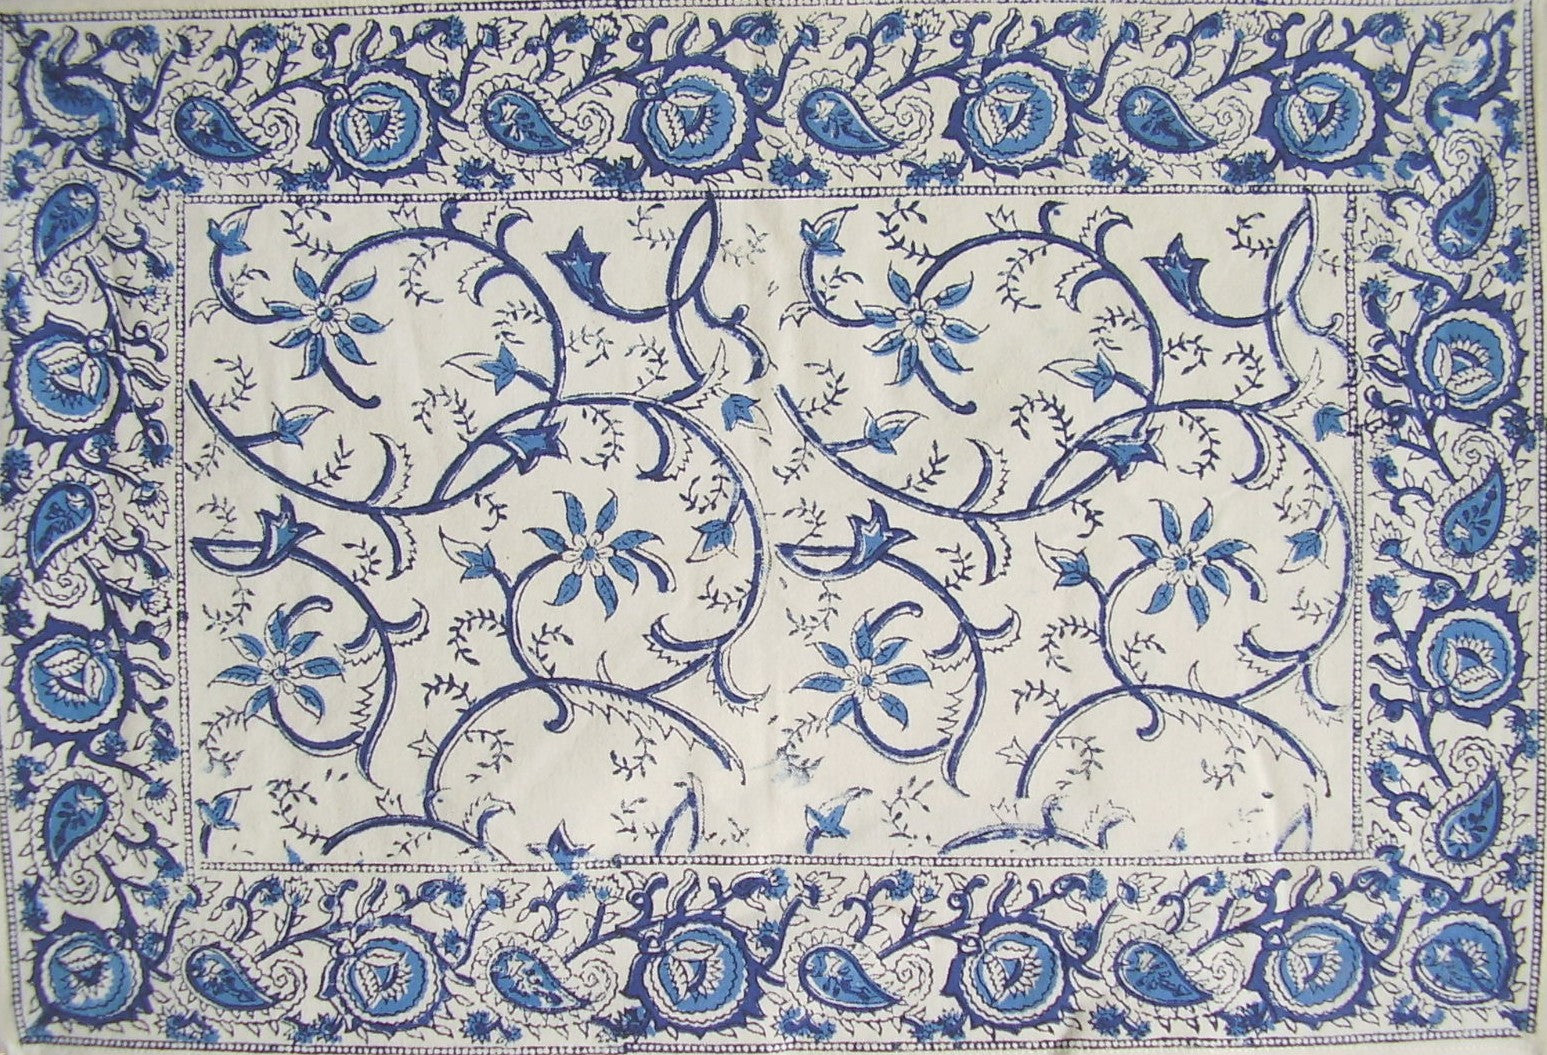 Rajasthan Vine Cotton Table Placemat 19" x 13" Blue